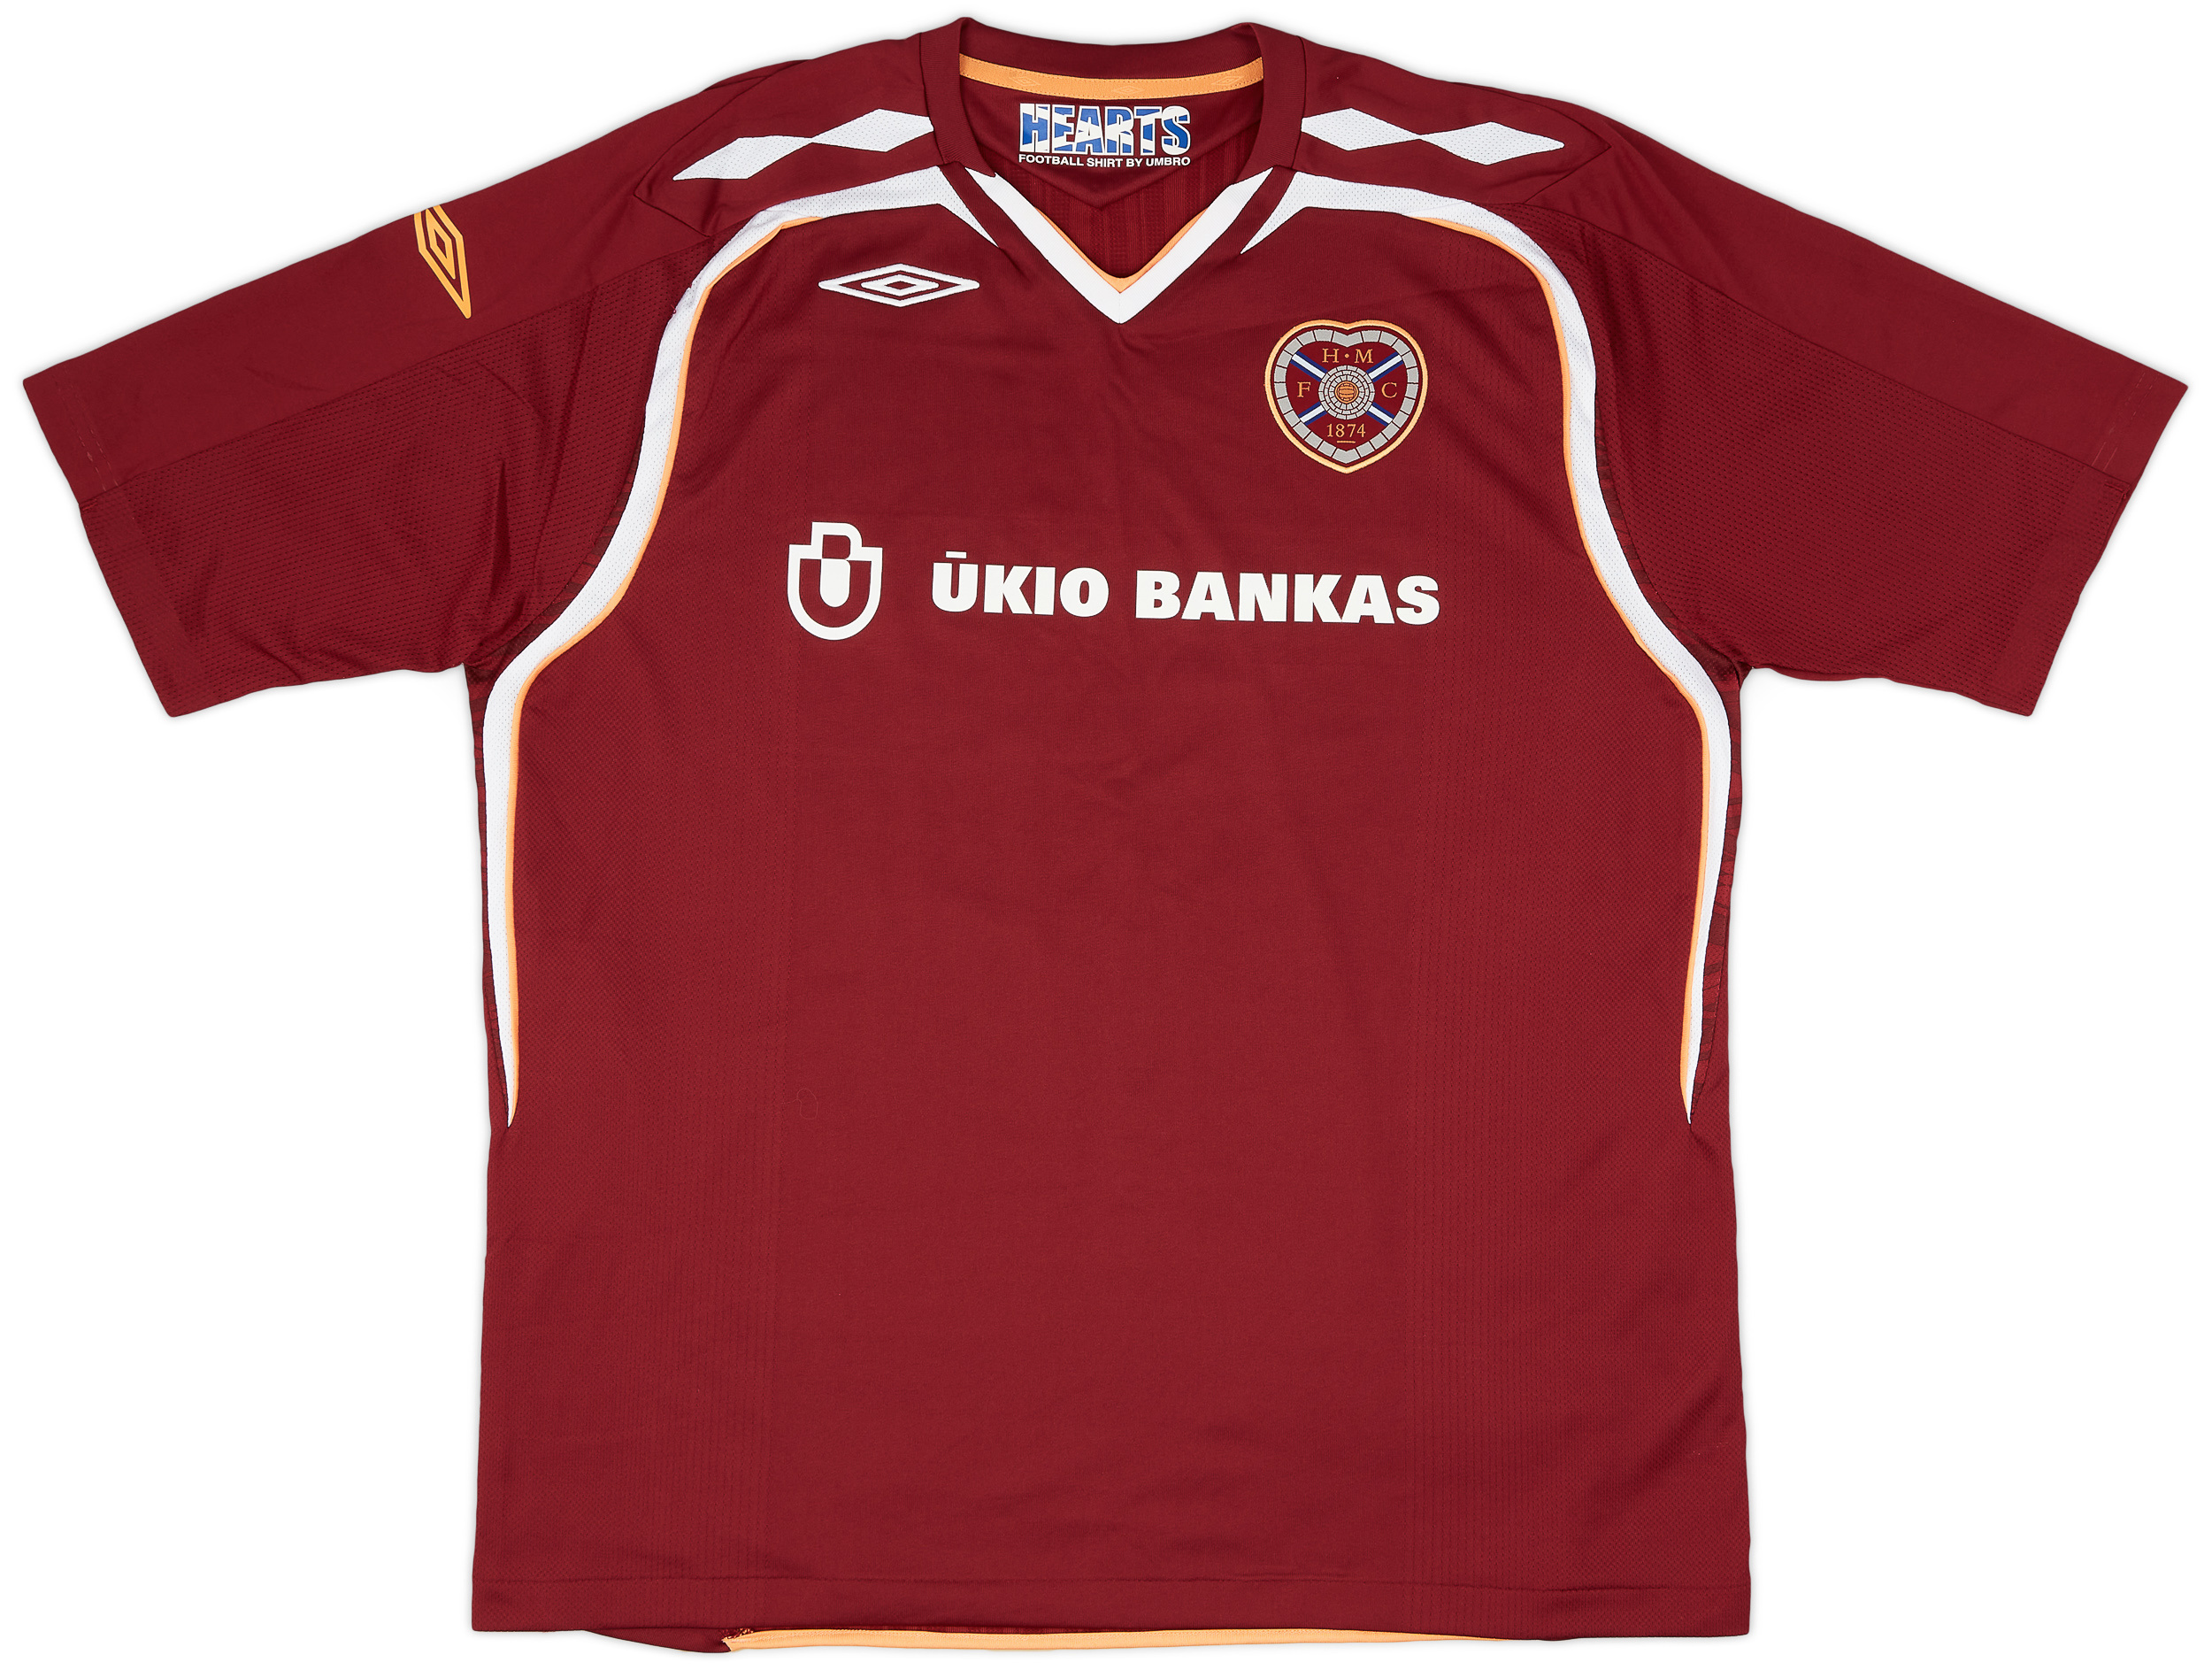 2007-08 Heart Of Midlothian (Hearts) Home Shirt - 9/10 - ()